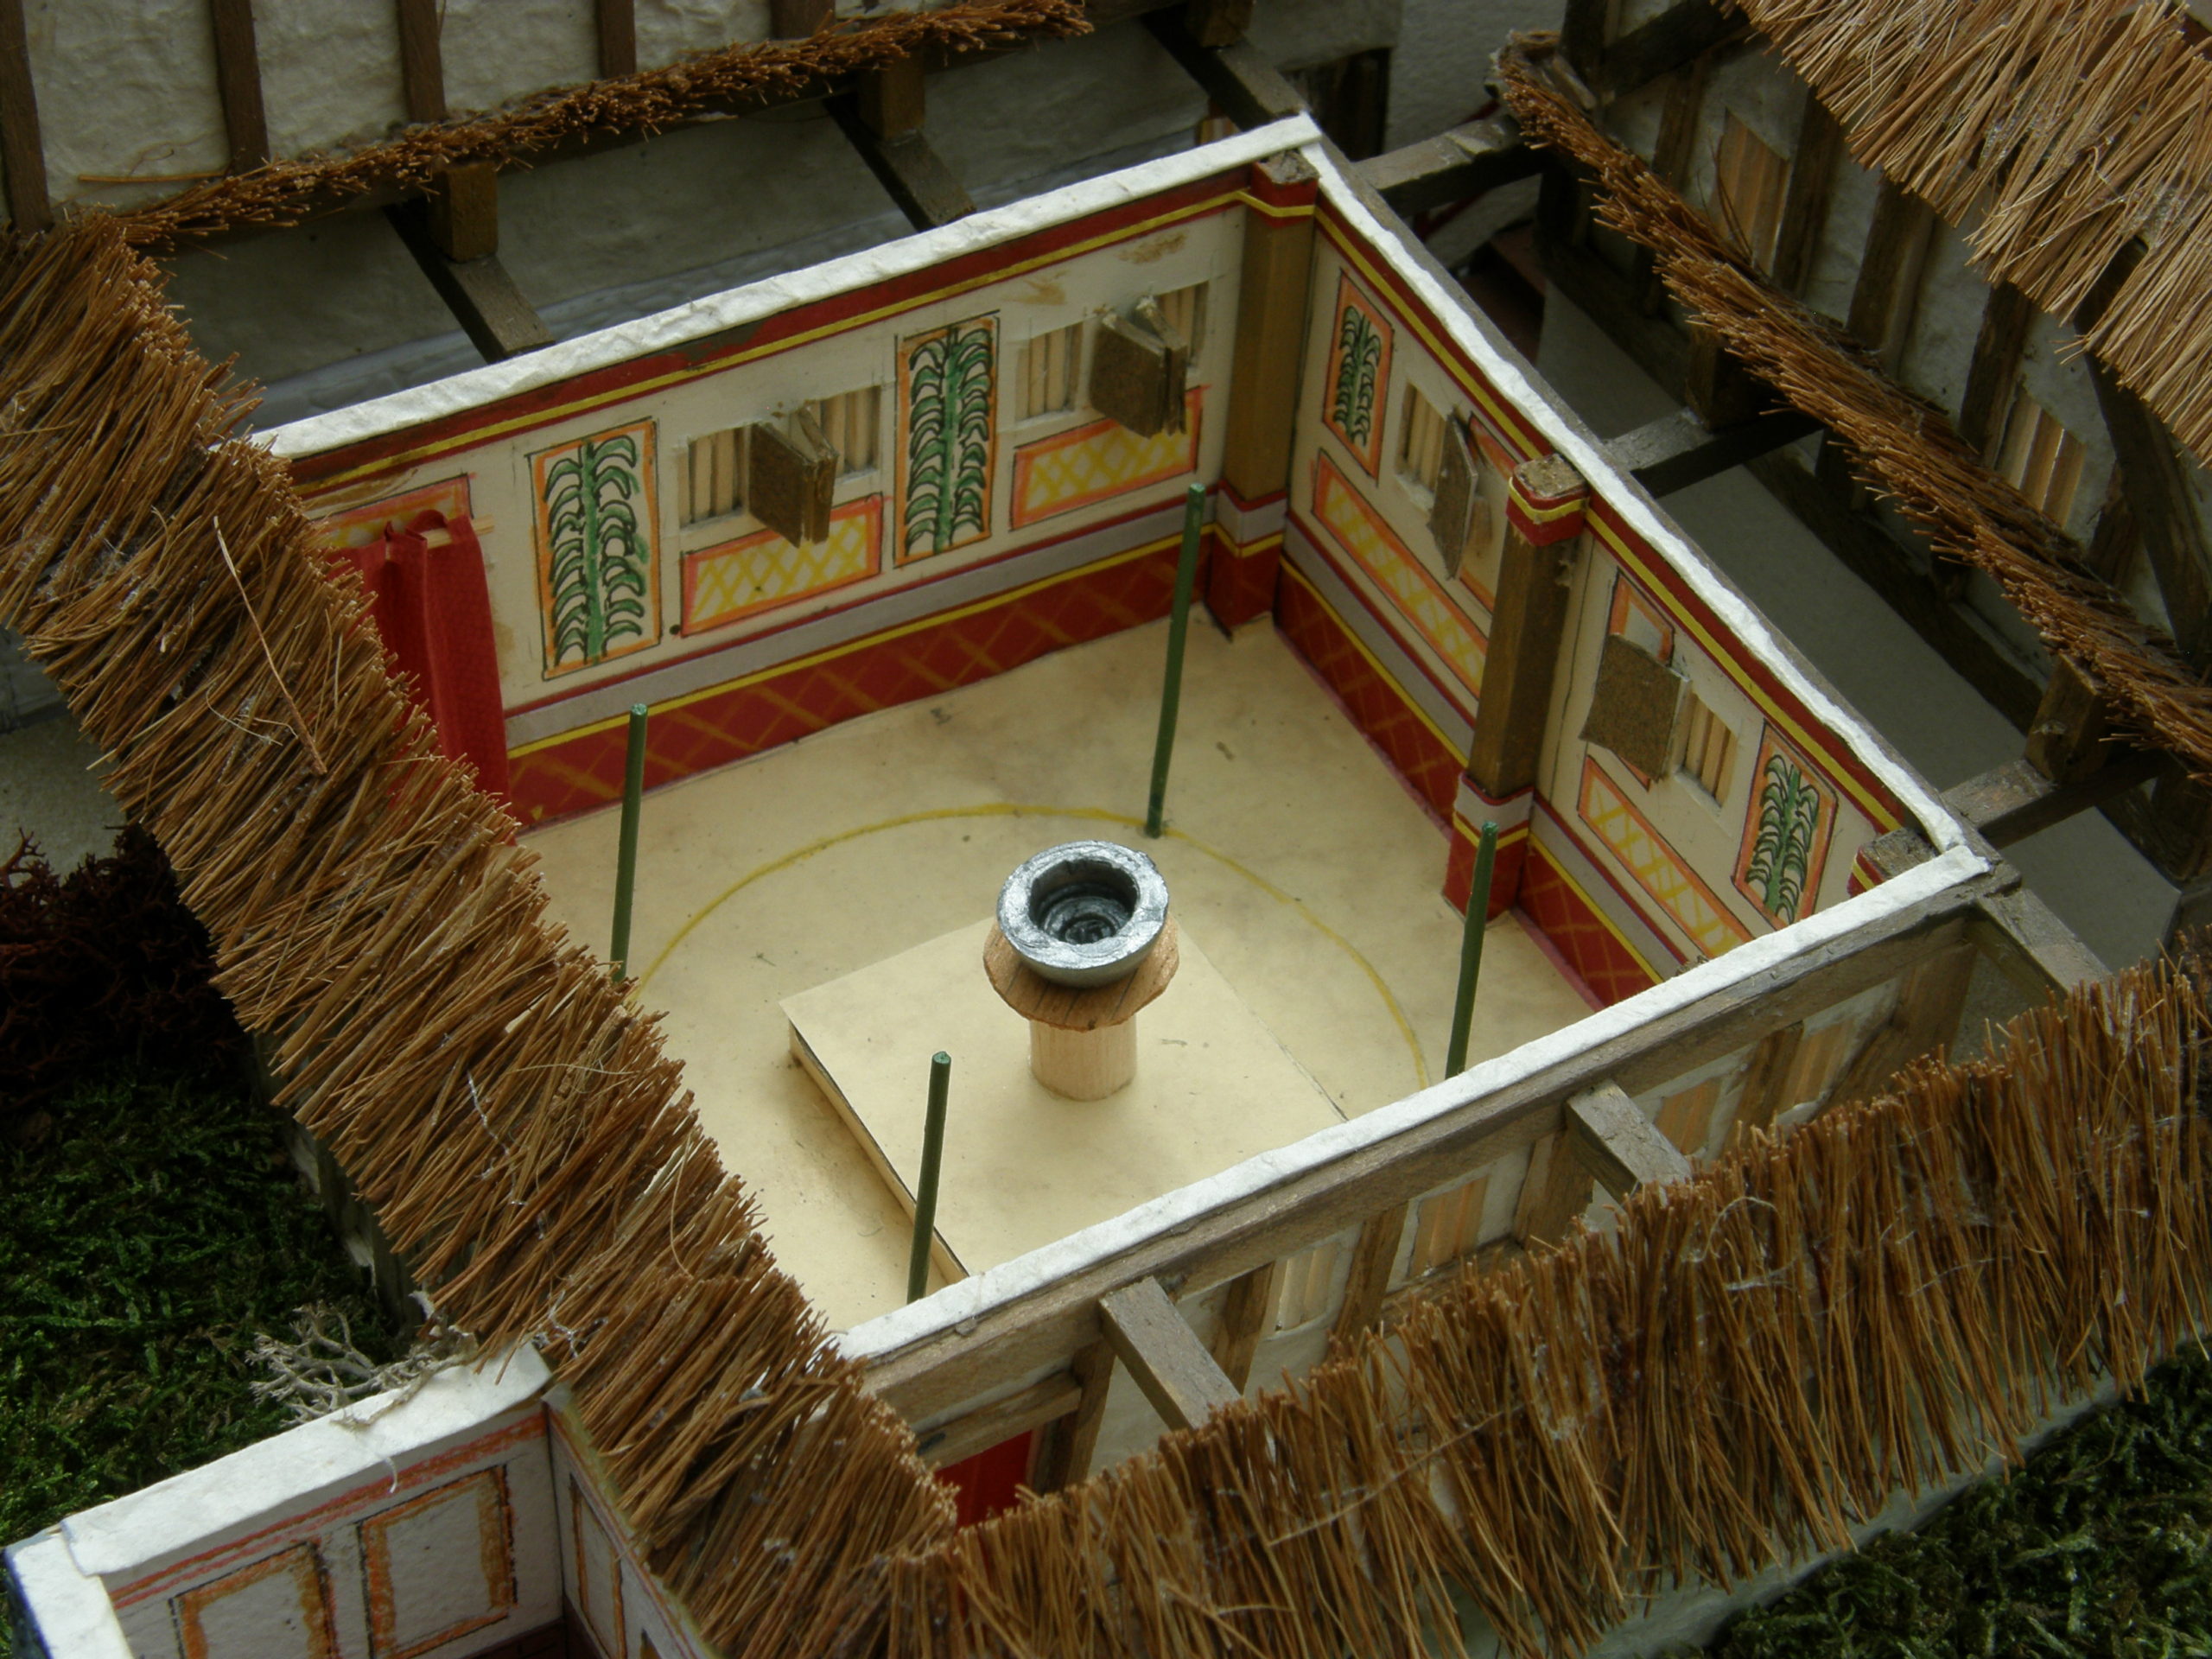 Lullingstone Villa Temple and ‘deep room’ model